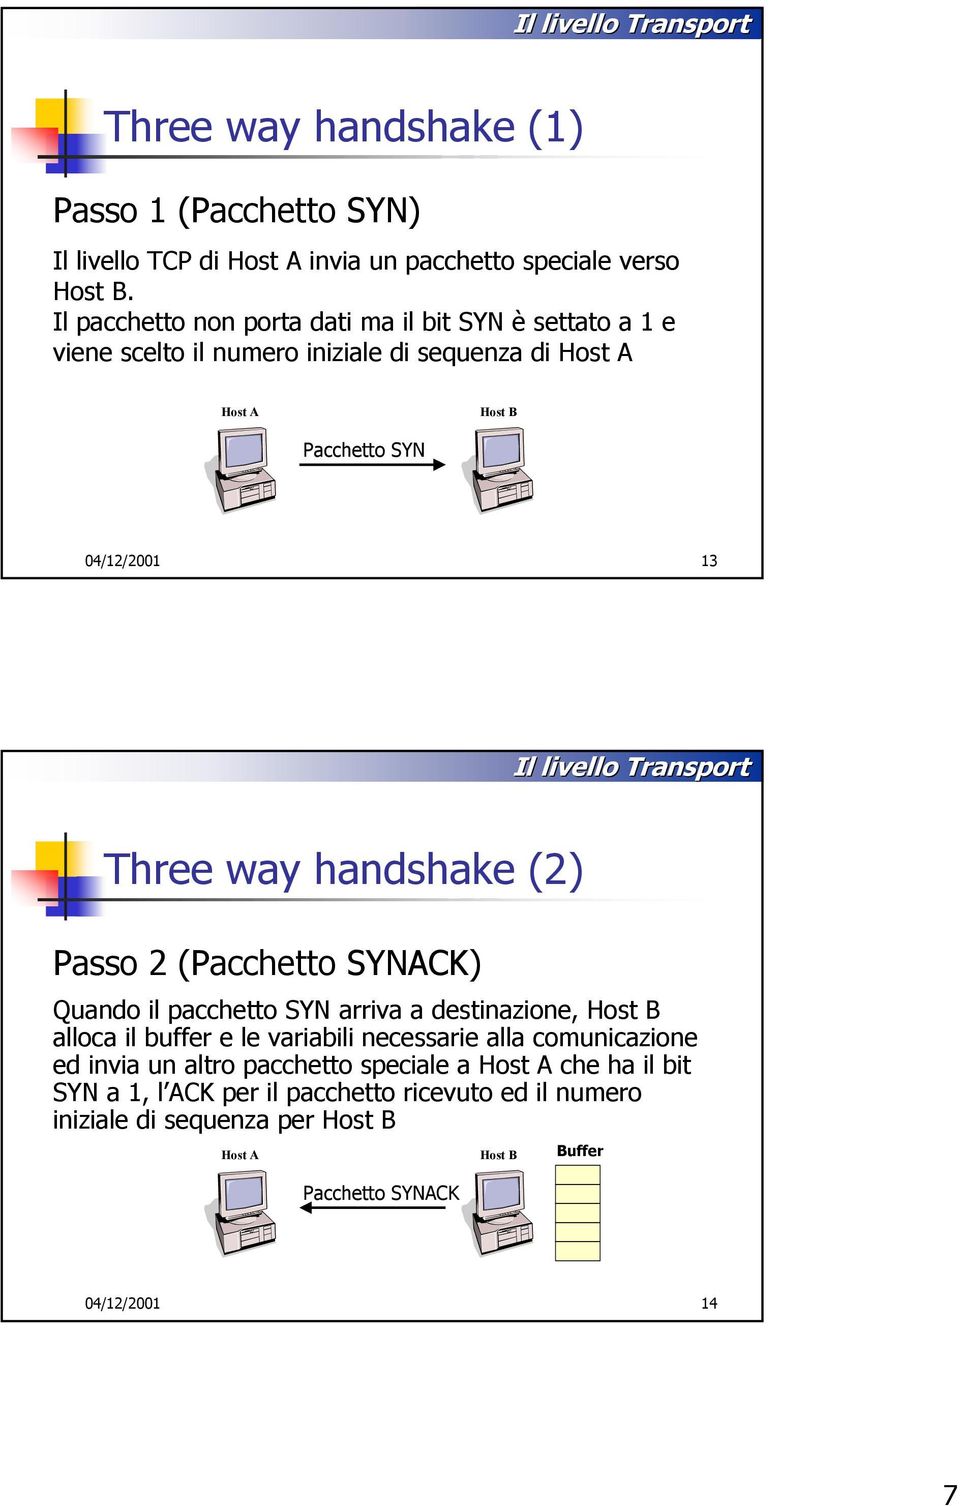 way handshake (2) Passo 2 (Pacchetto SYNACK) Quando il pacchetto SYN arriva a destinazione, alloca il buffer e le variabili necessarie alla